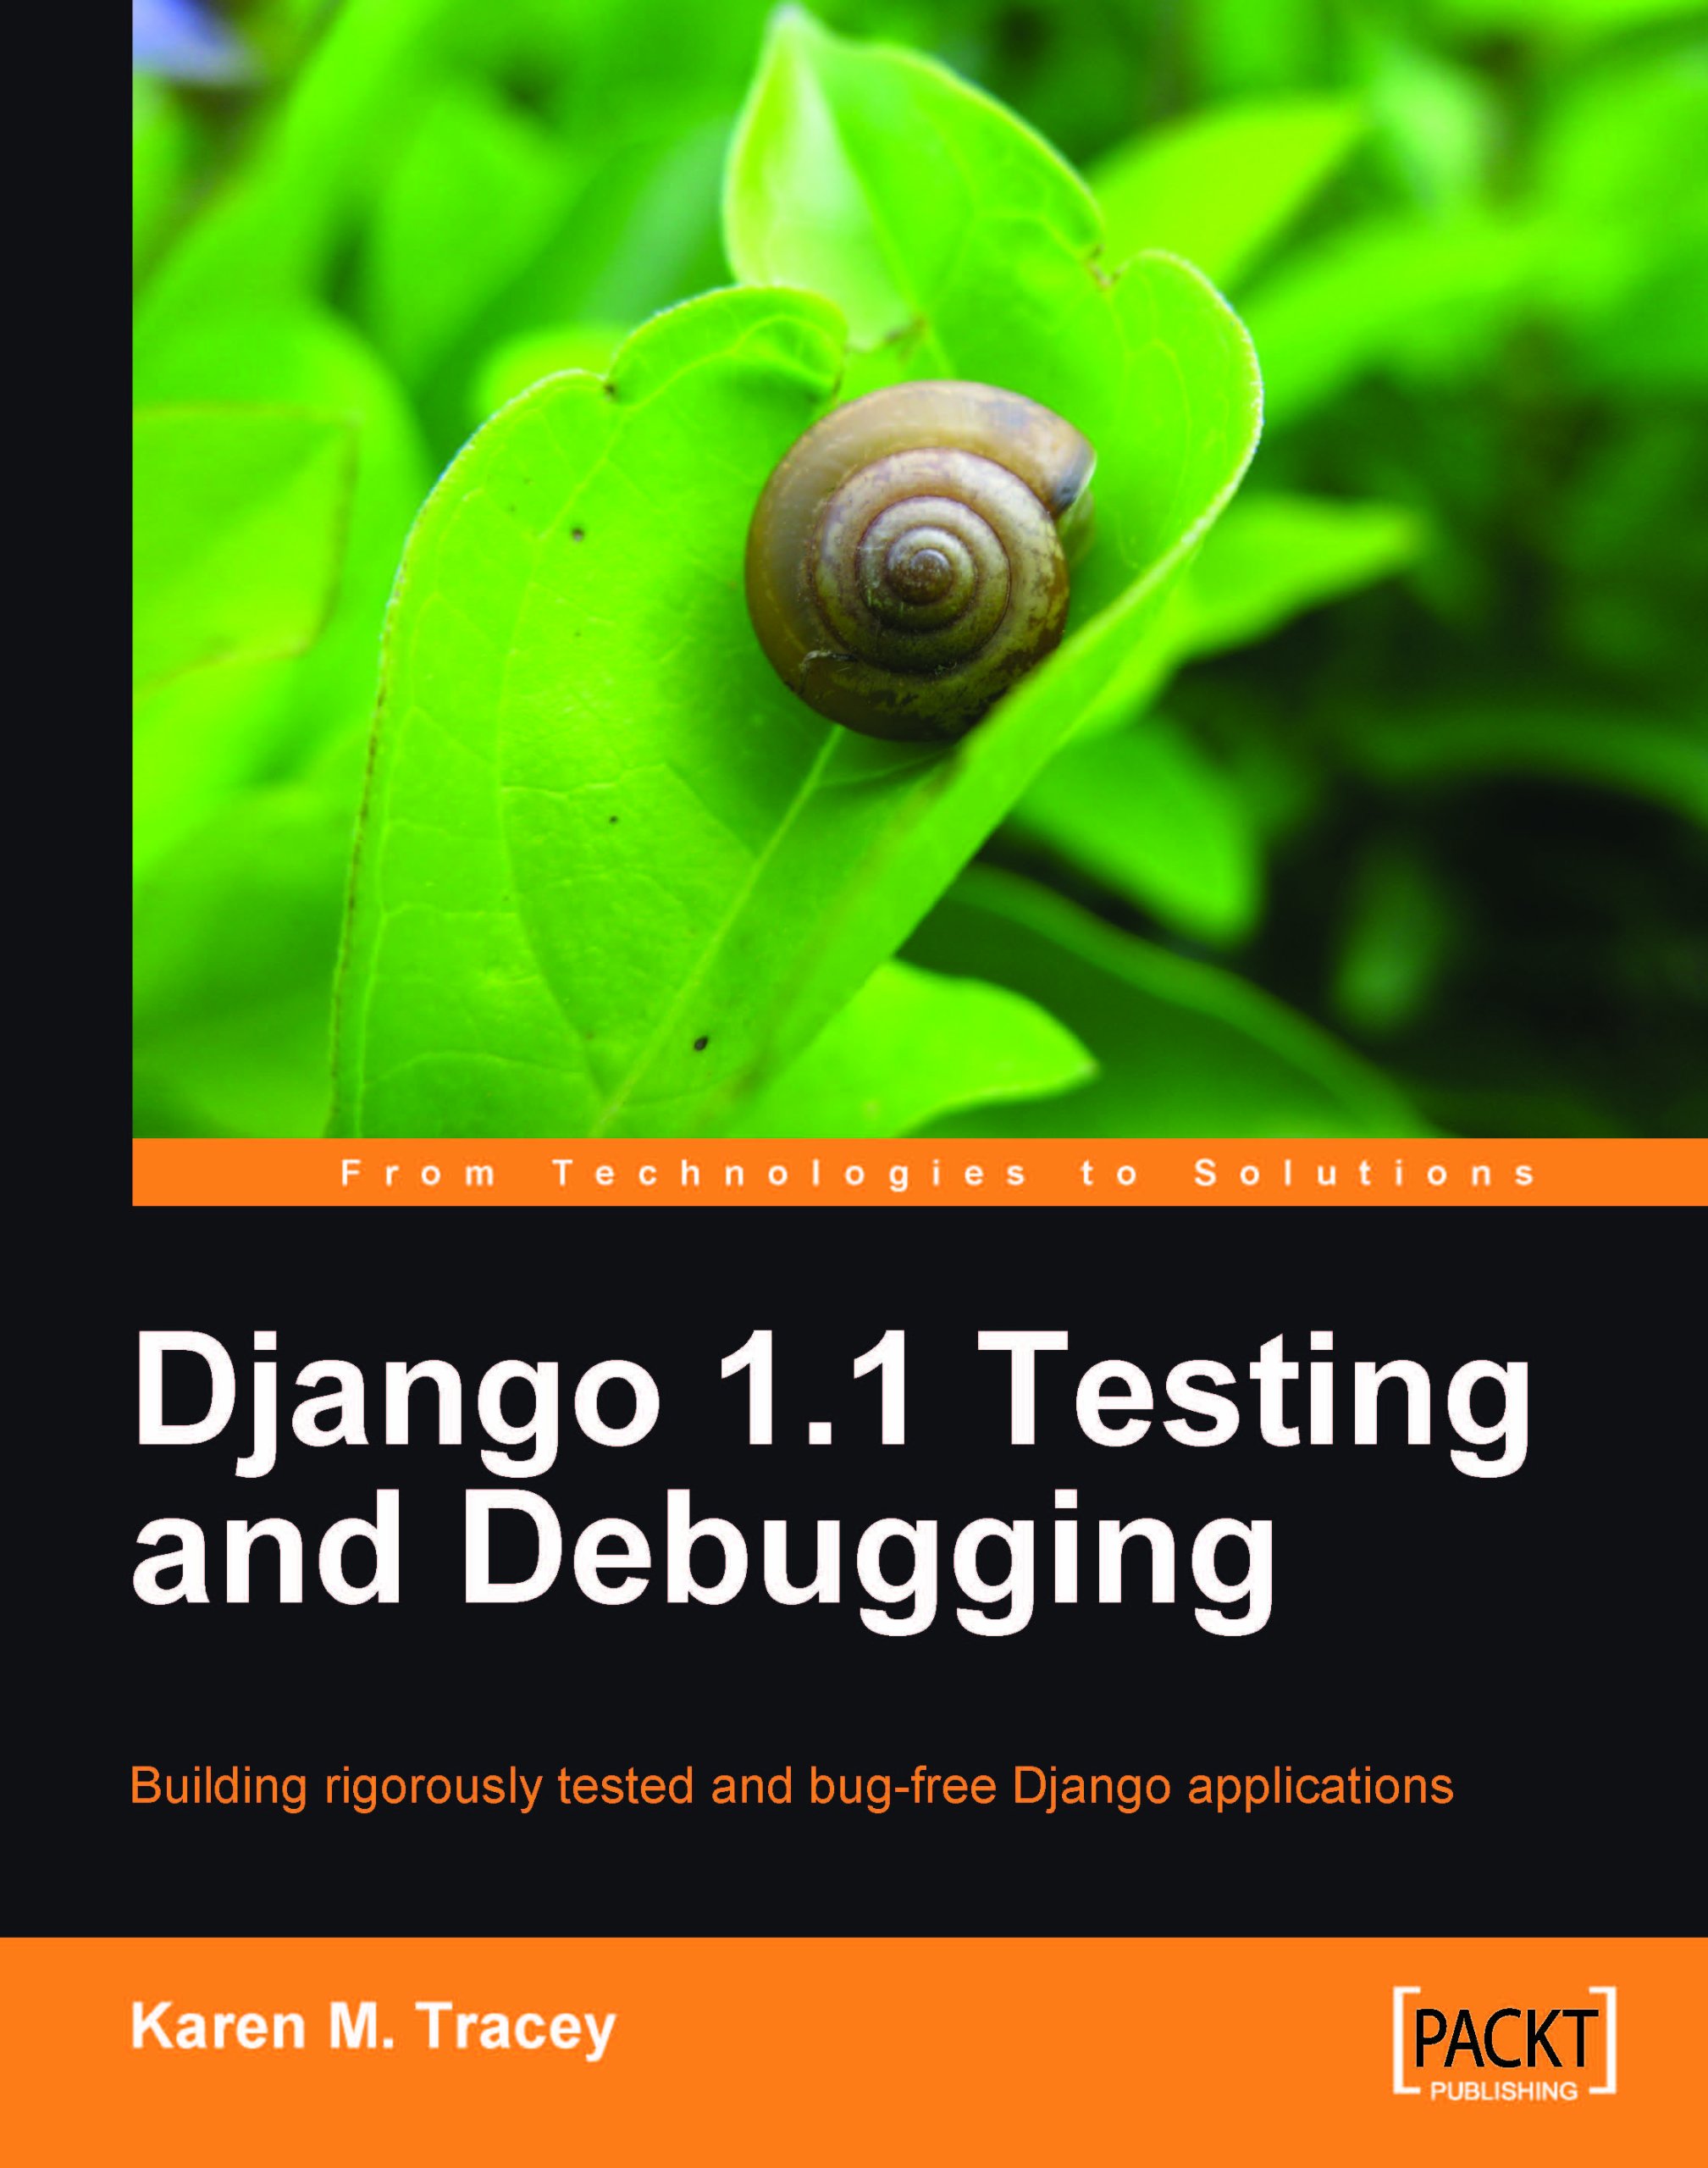 Django 1.1 Testing and Debugging by Karen M. Tracey